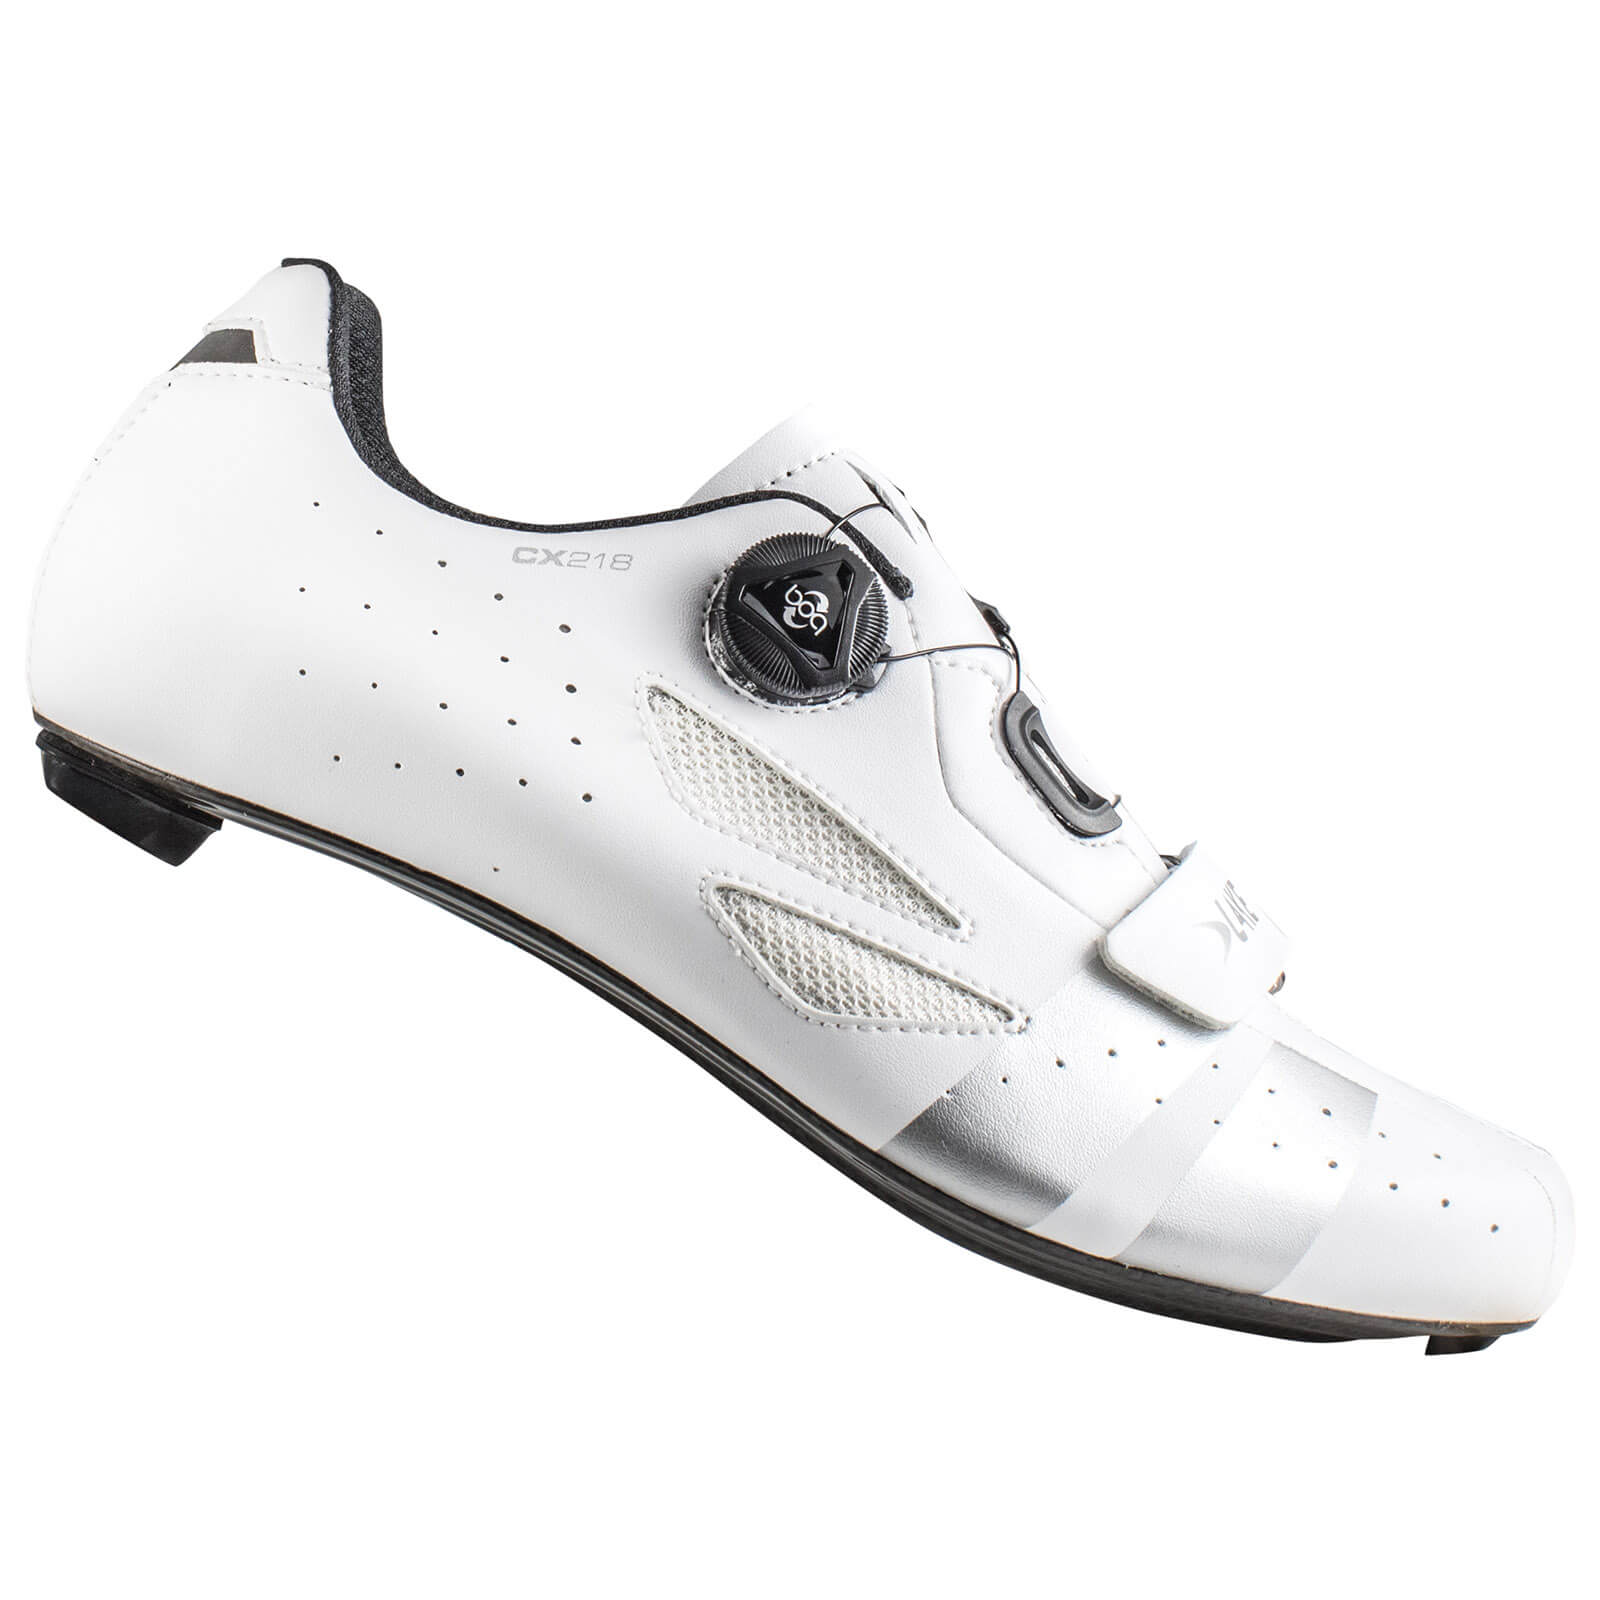 Lake CX218 Carbon Road Shoes - White 